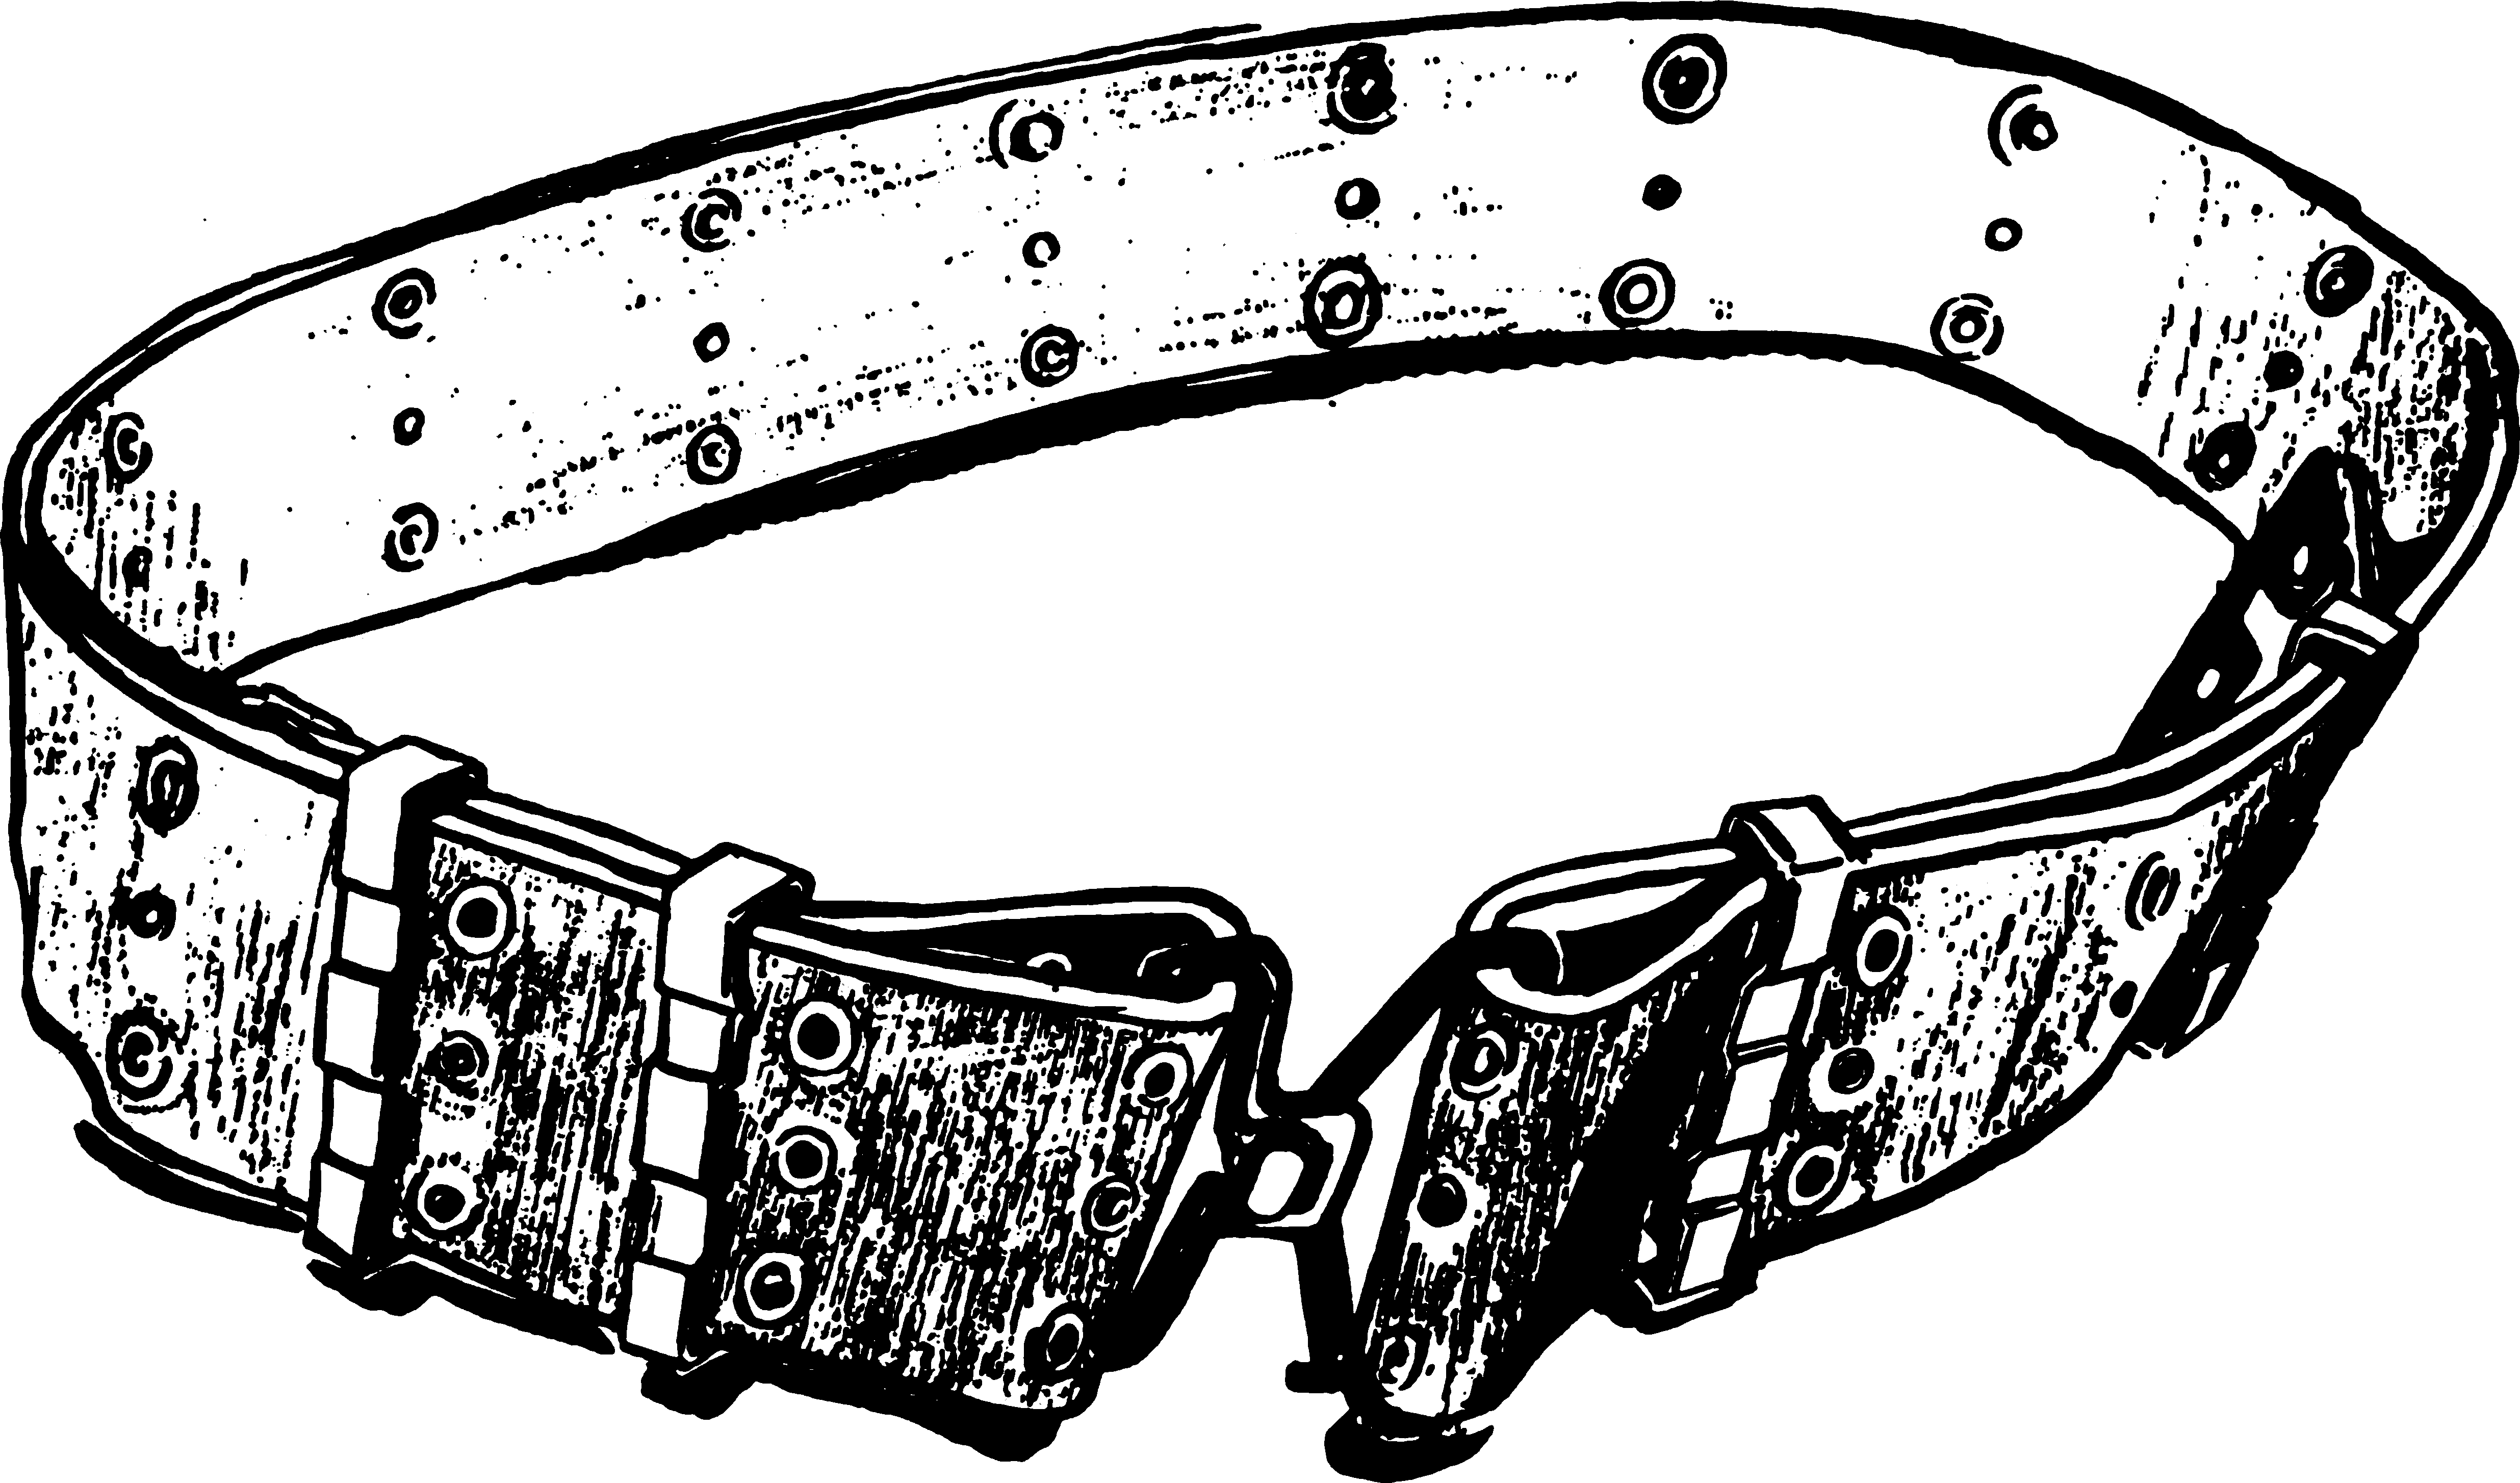 LLCE individual equipment belt